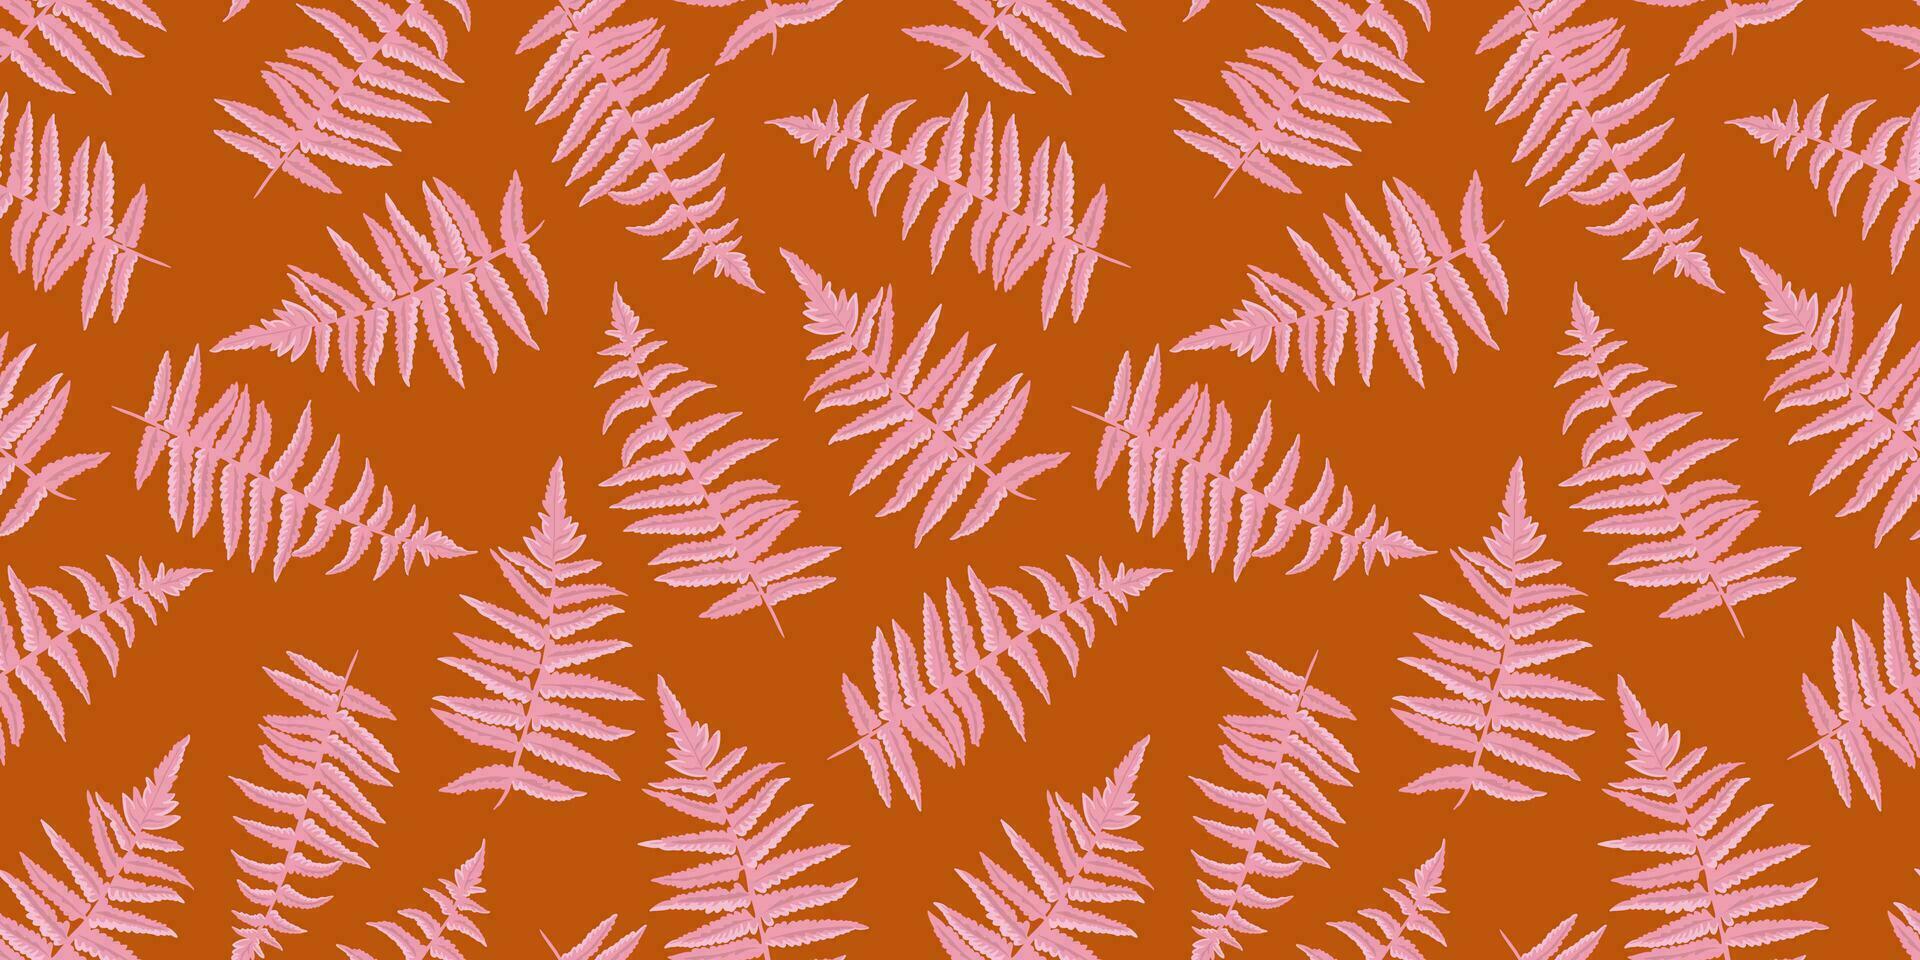 färgrik enkel form grenar löv ormbunke sömlös mönster. vektor hand dragen skiss. kreativ abstrakt, stiliserade, silhuetter blad stjälkar skriva ut. mall för design, tyg, mode, textil-